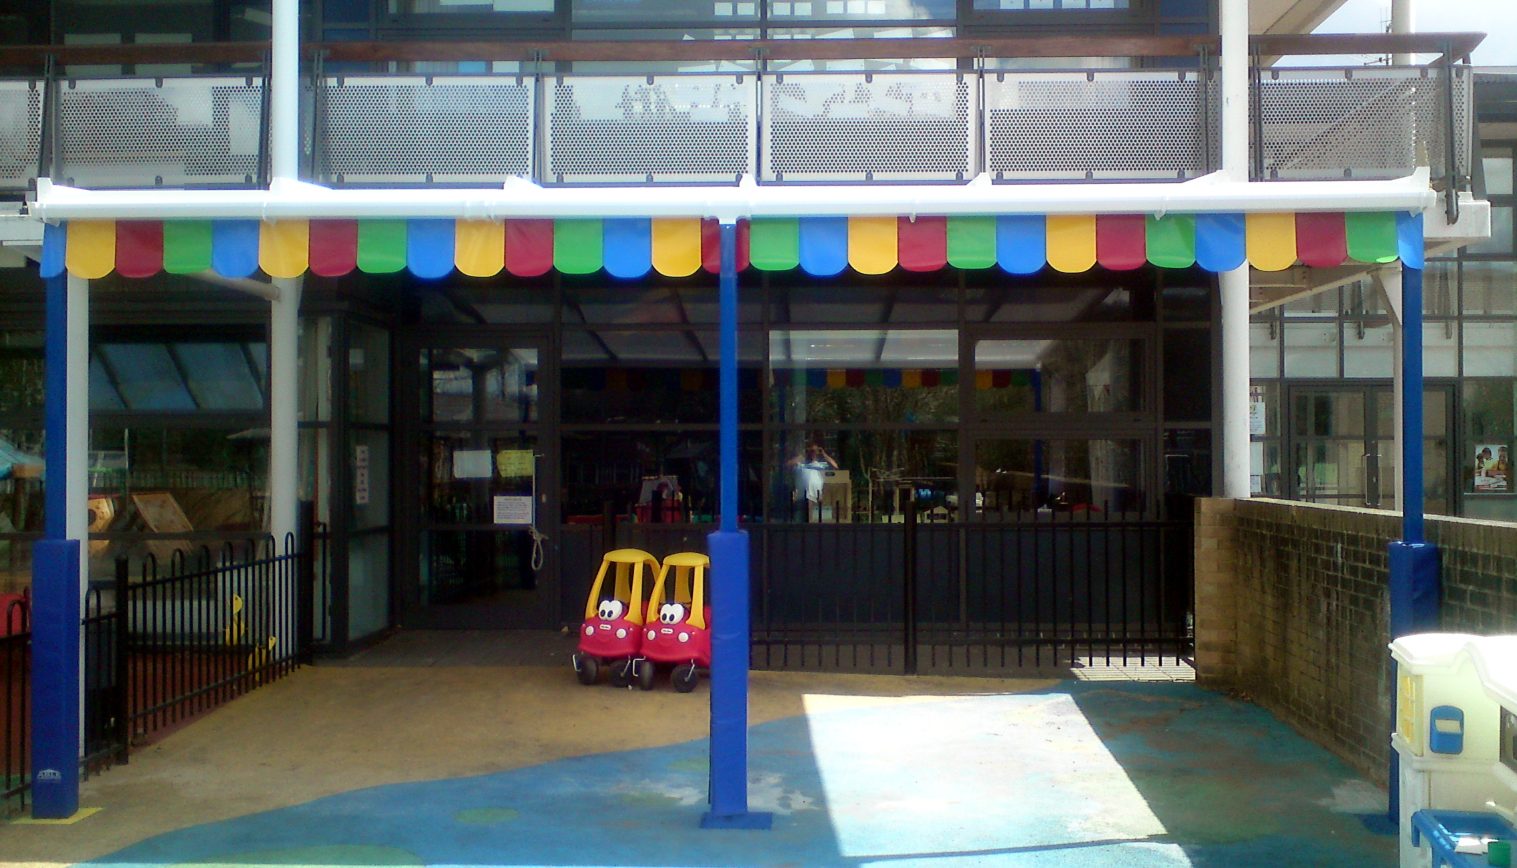 Bourne Children’s Centre – Second Installation